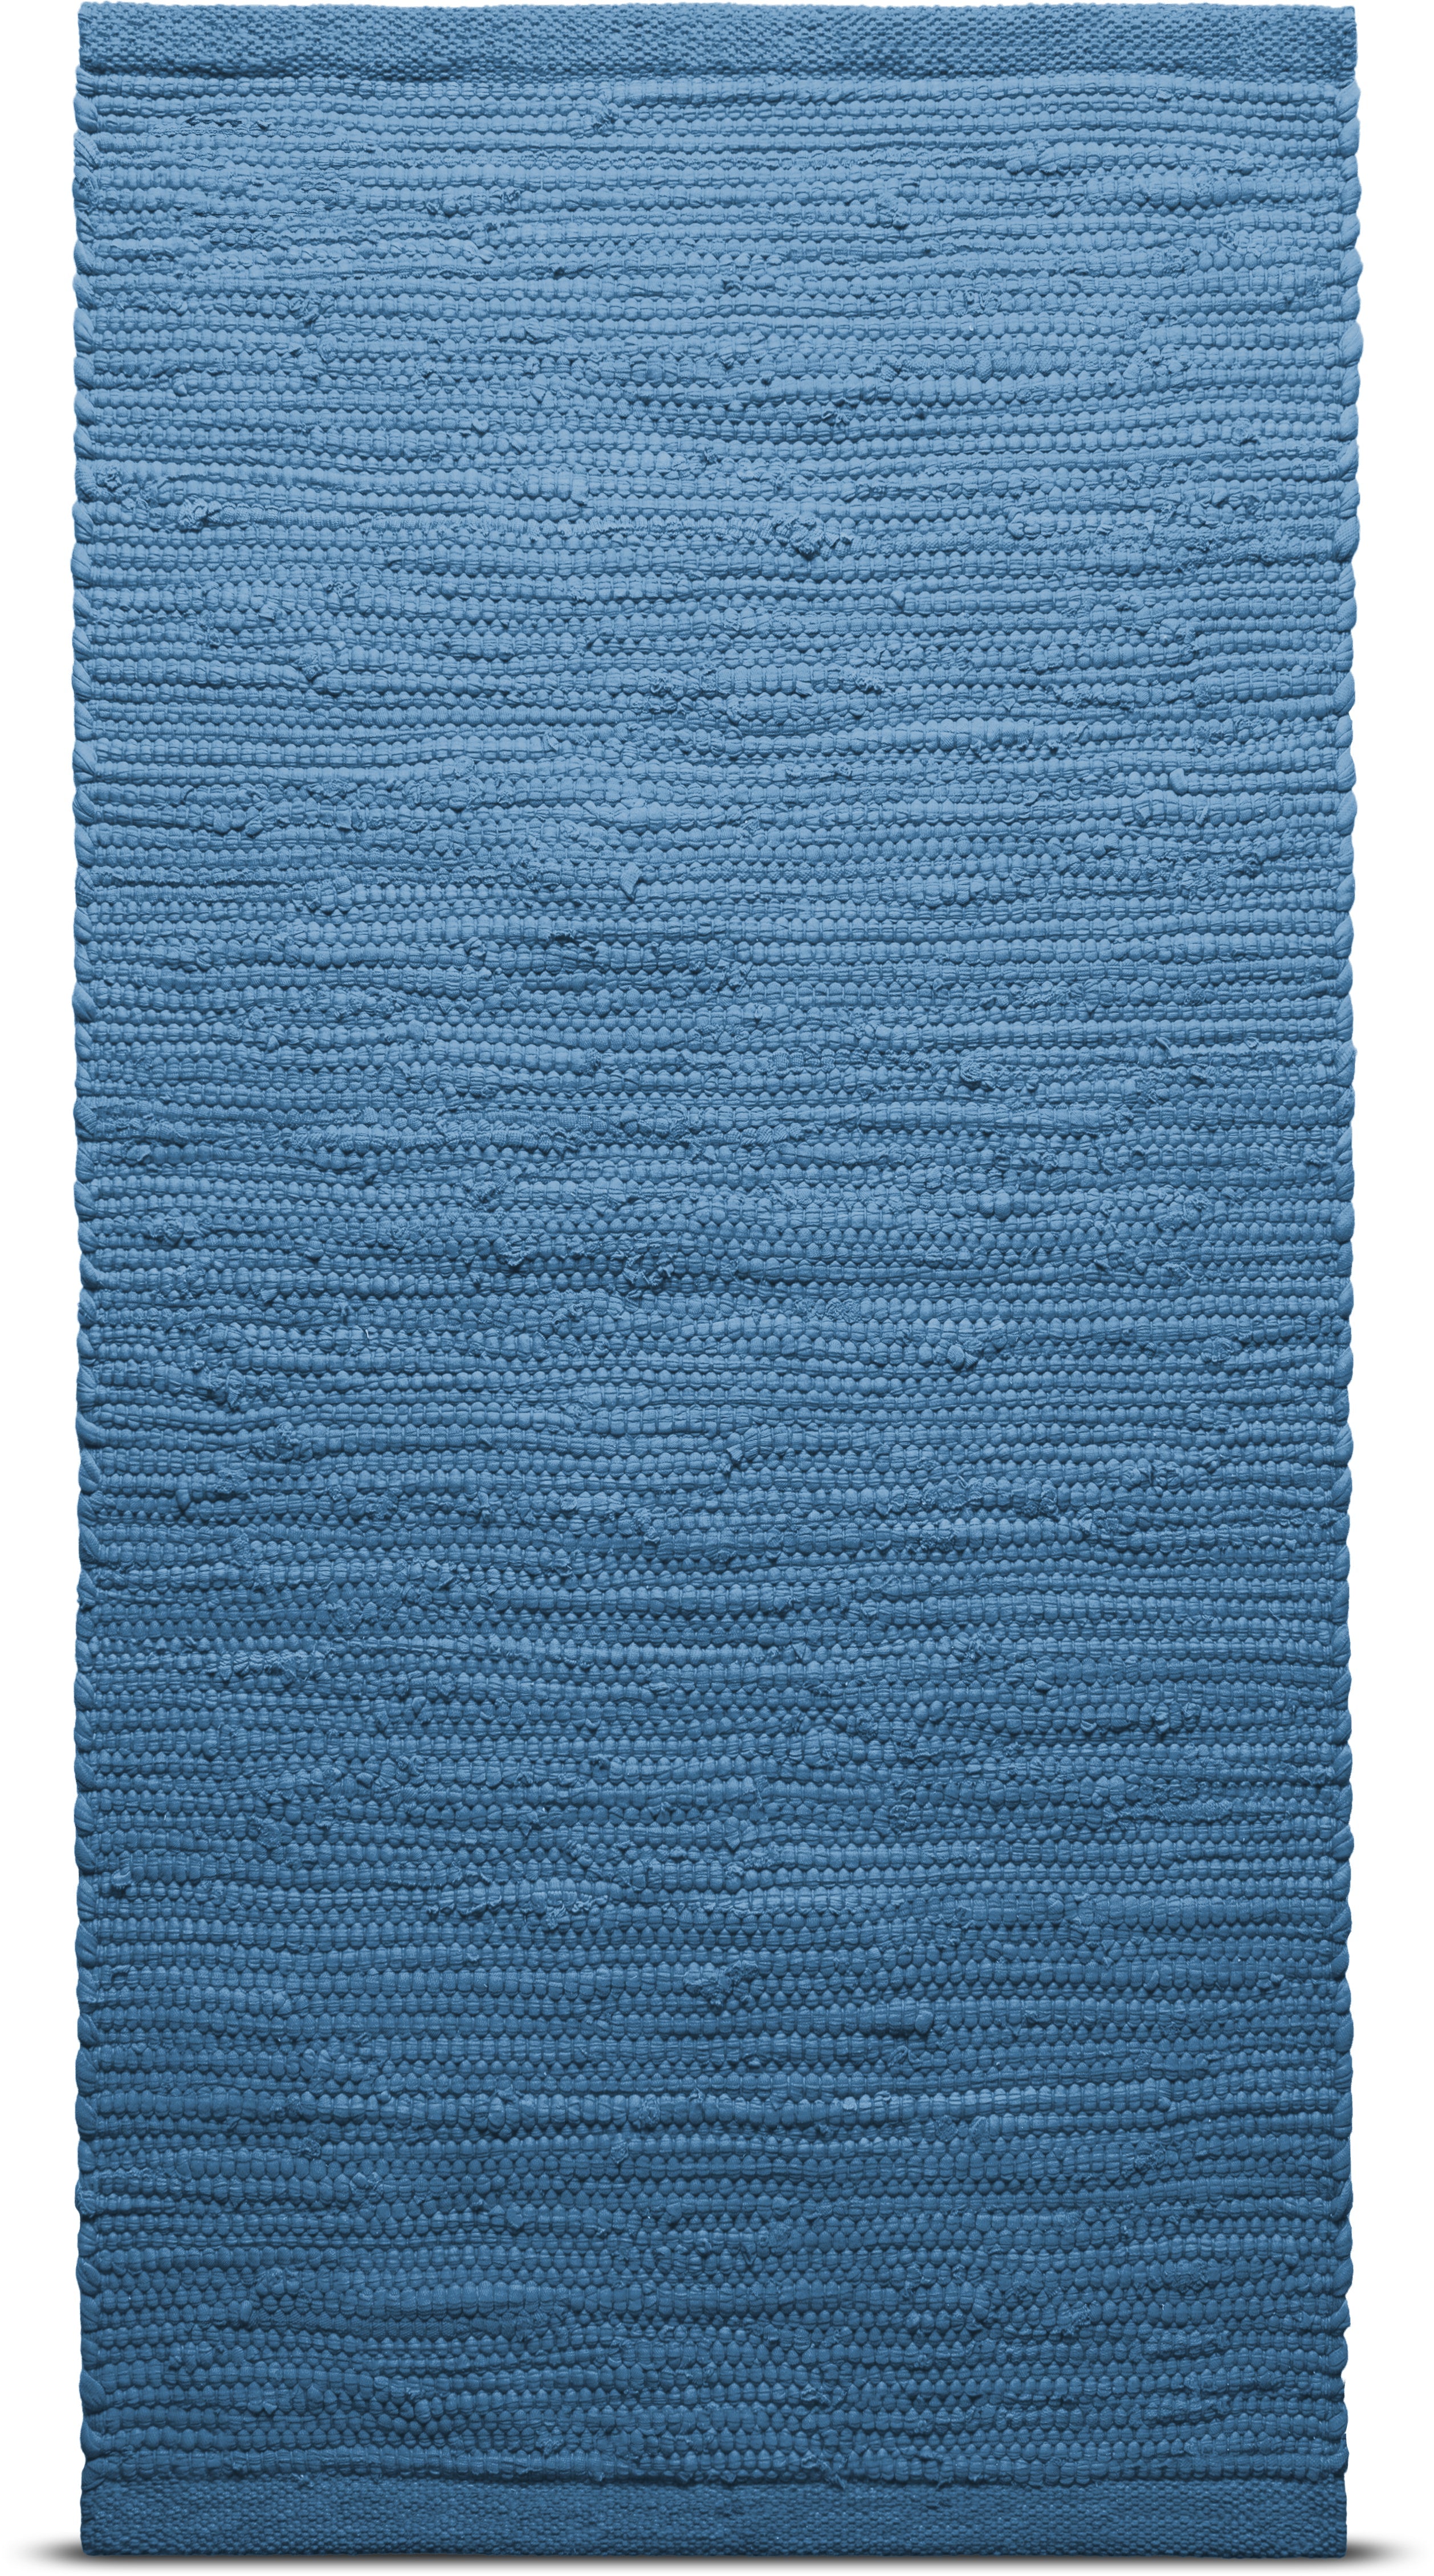 Rug Solid Bomullsmatta 170 x 240 cm, Stilla havet